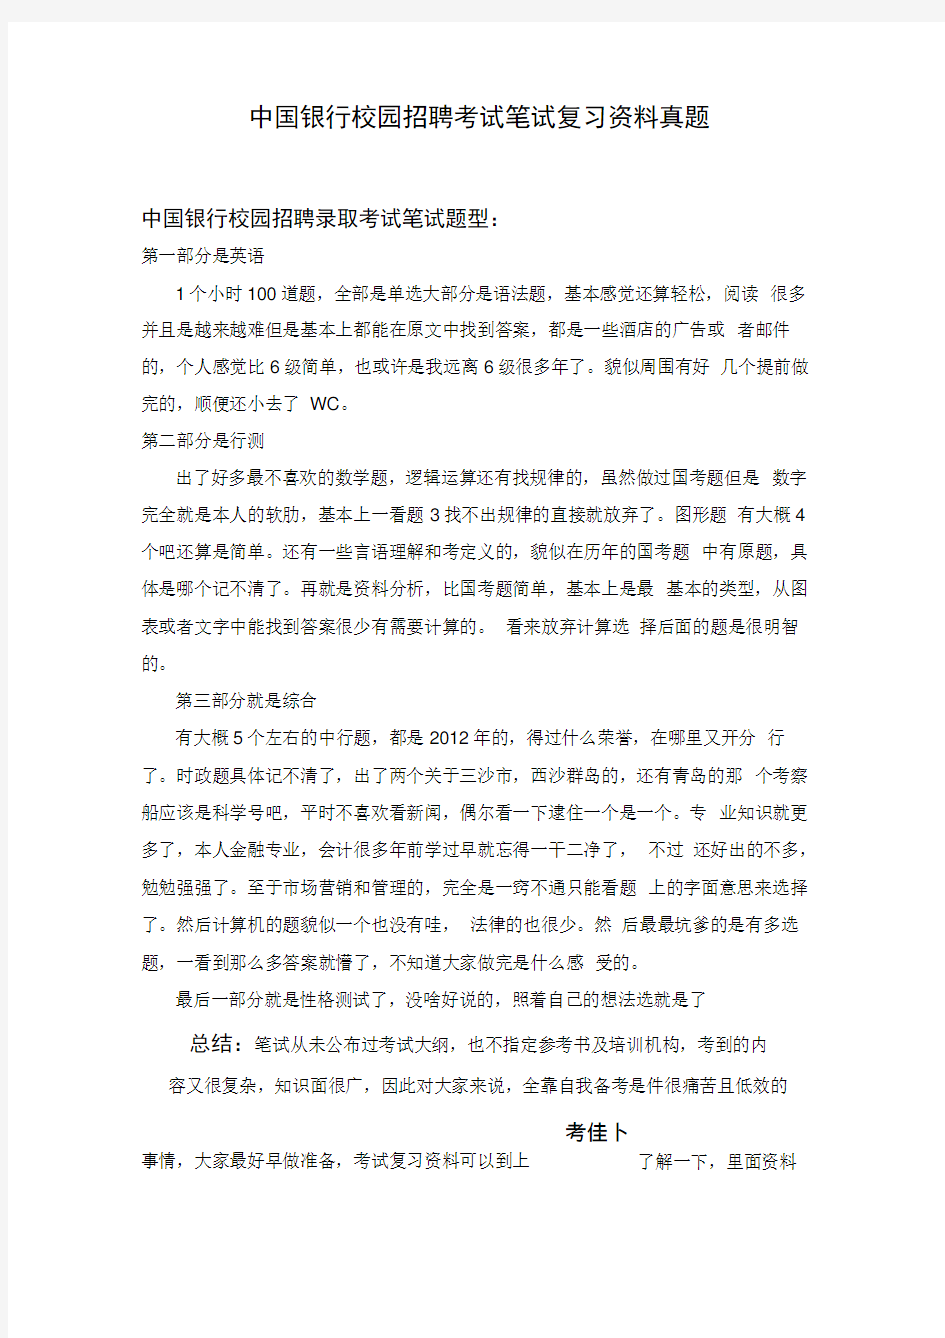 中国银行招聘考试笔试题目试卷历年考试真题